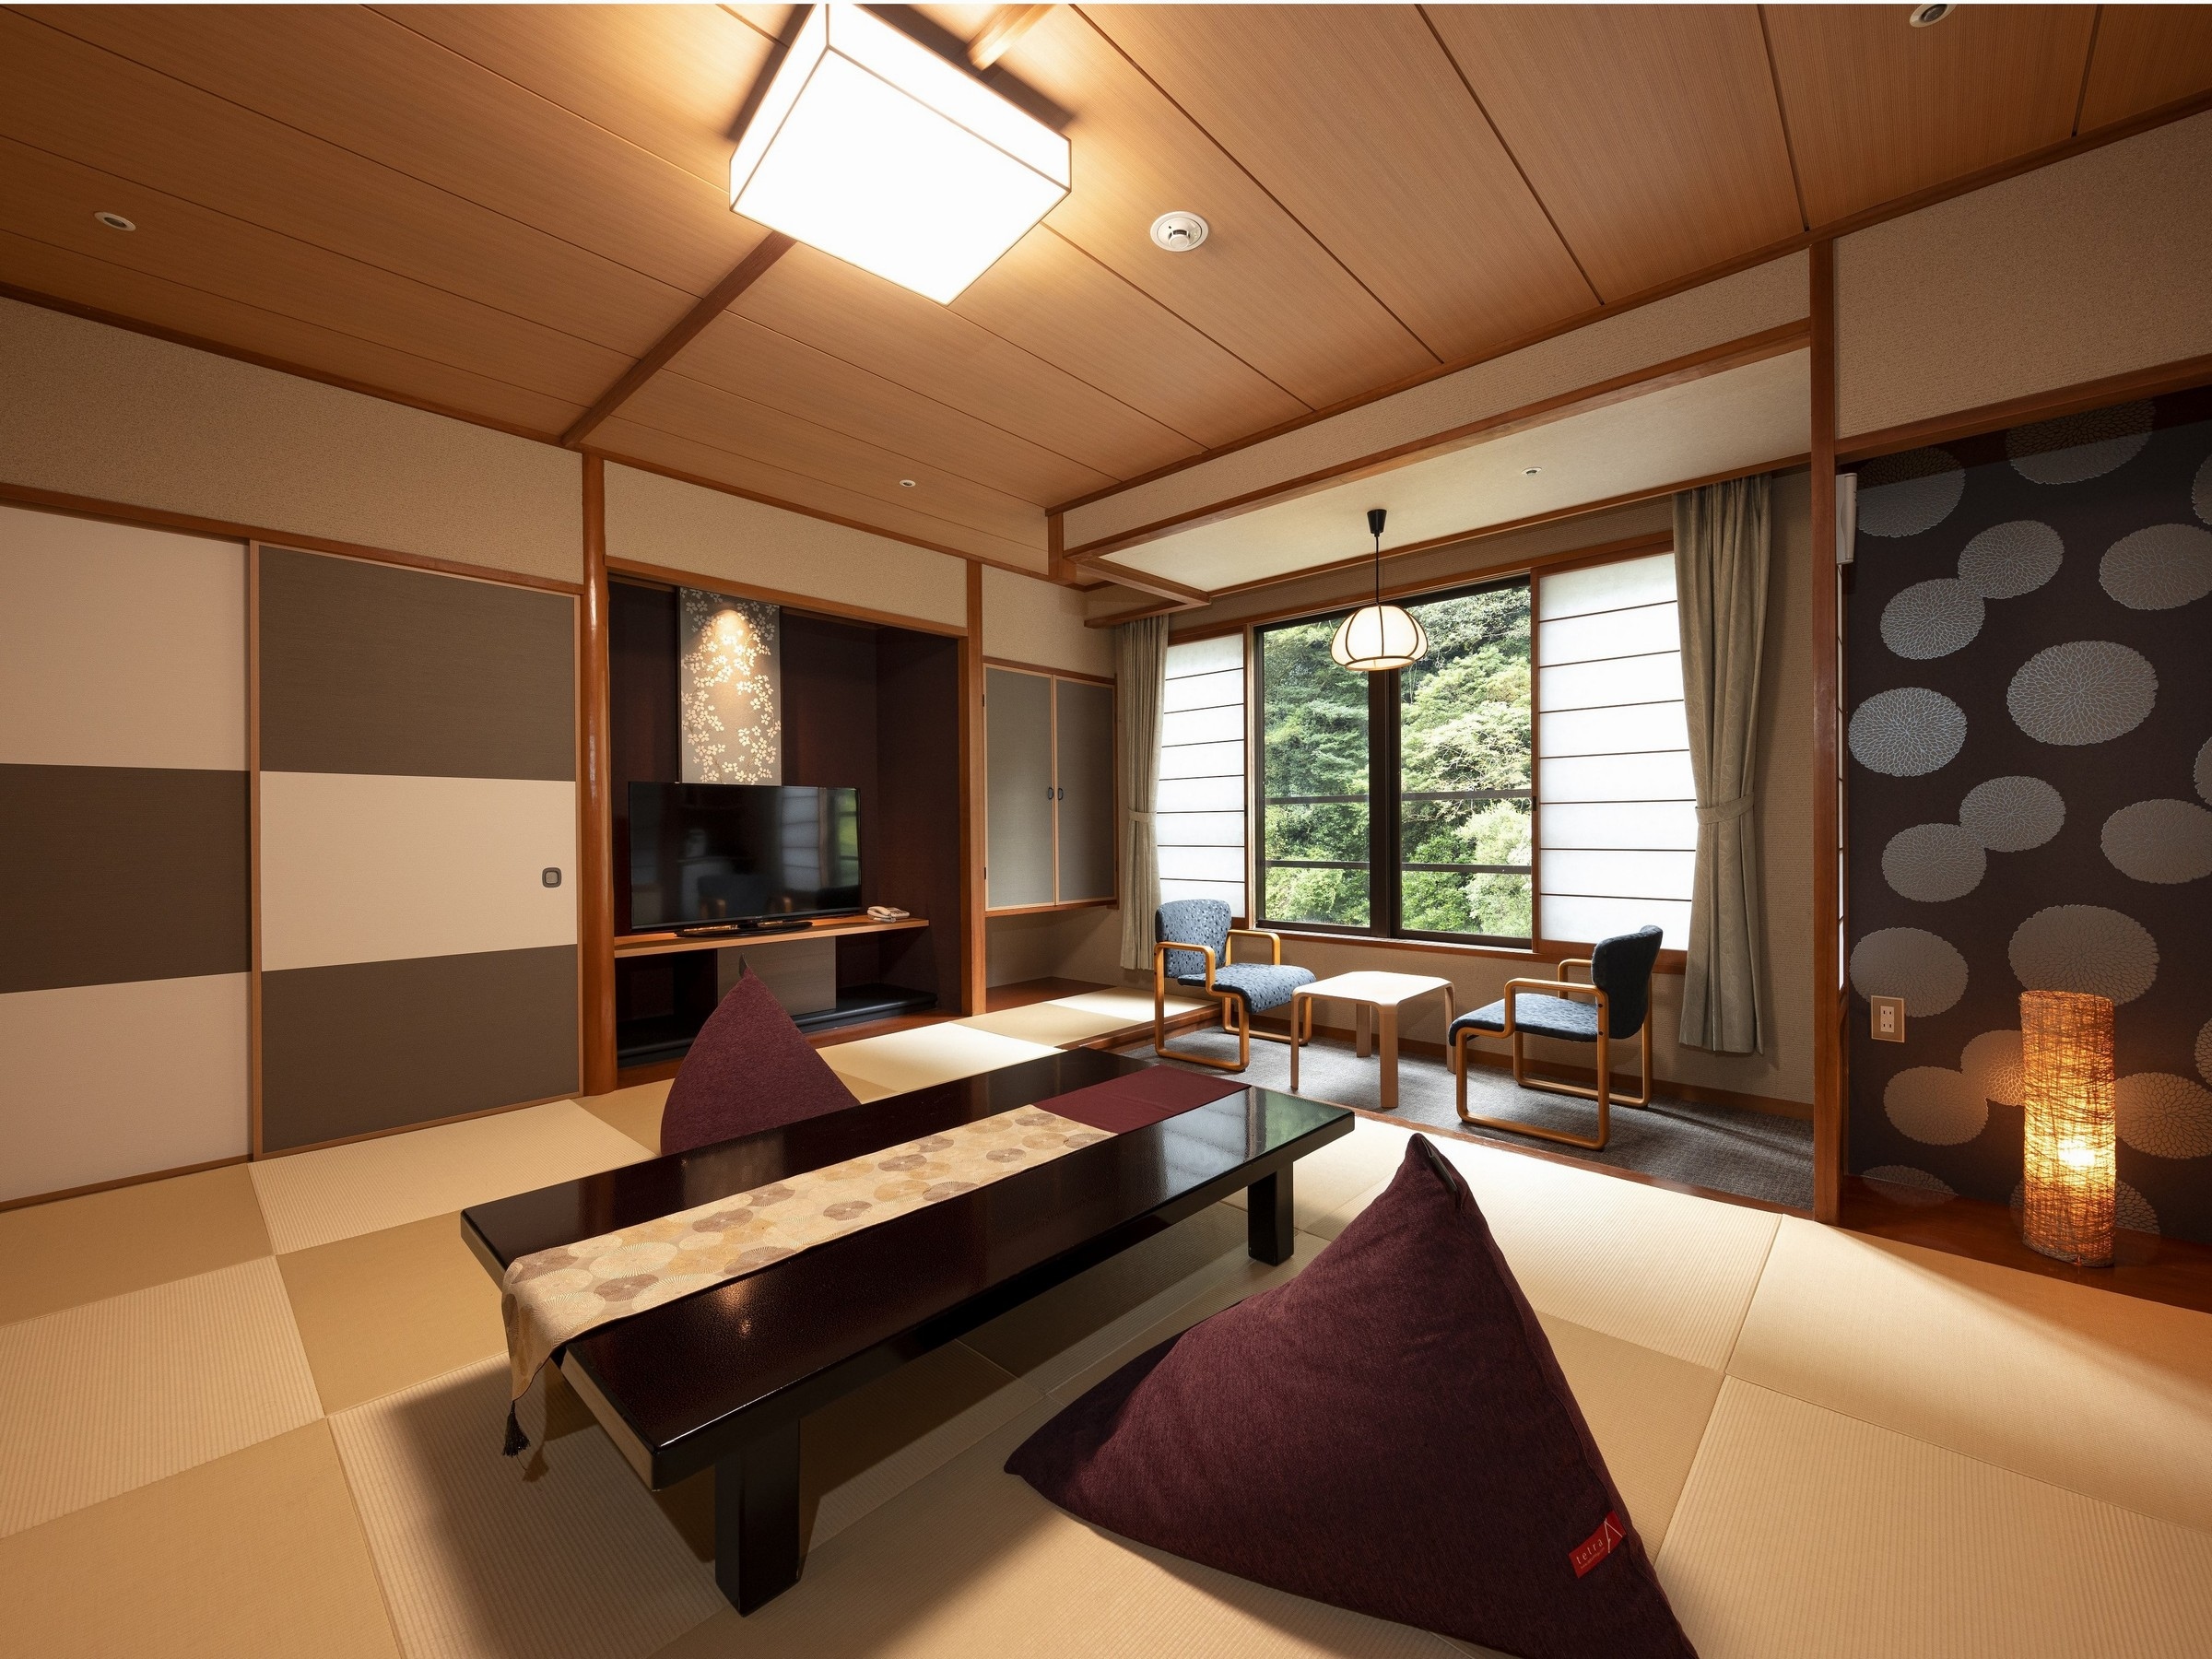 [ตัวอย่างห้องพักสไตล์ญี่ปุ่นที่ปรับปรุงใหม่] ห้องสไตล์ญี่ปุ่นรูปแบบใหม่ที่คุณสามารถผ่อนคลายด้วยหมอนอิงลูกปัดนุ่มๆ และความงามของลำธารบนภูเขา